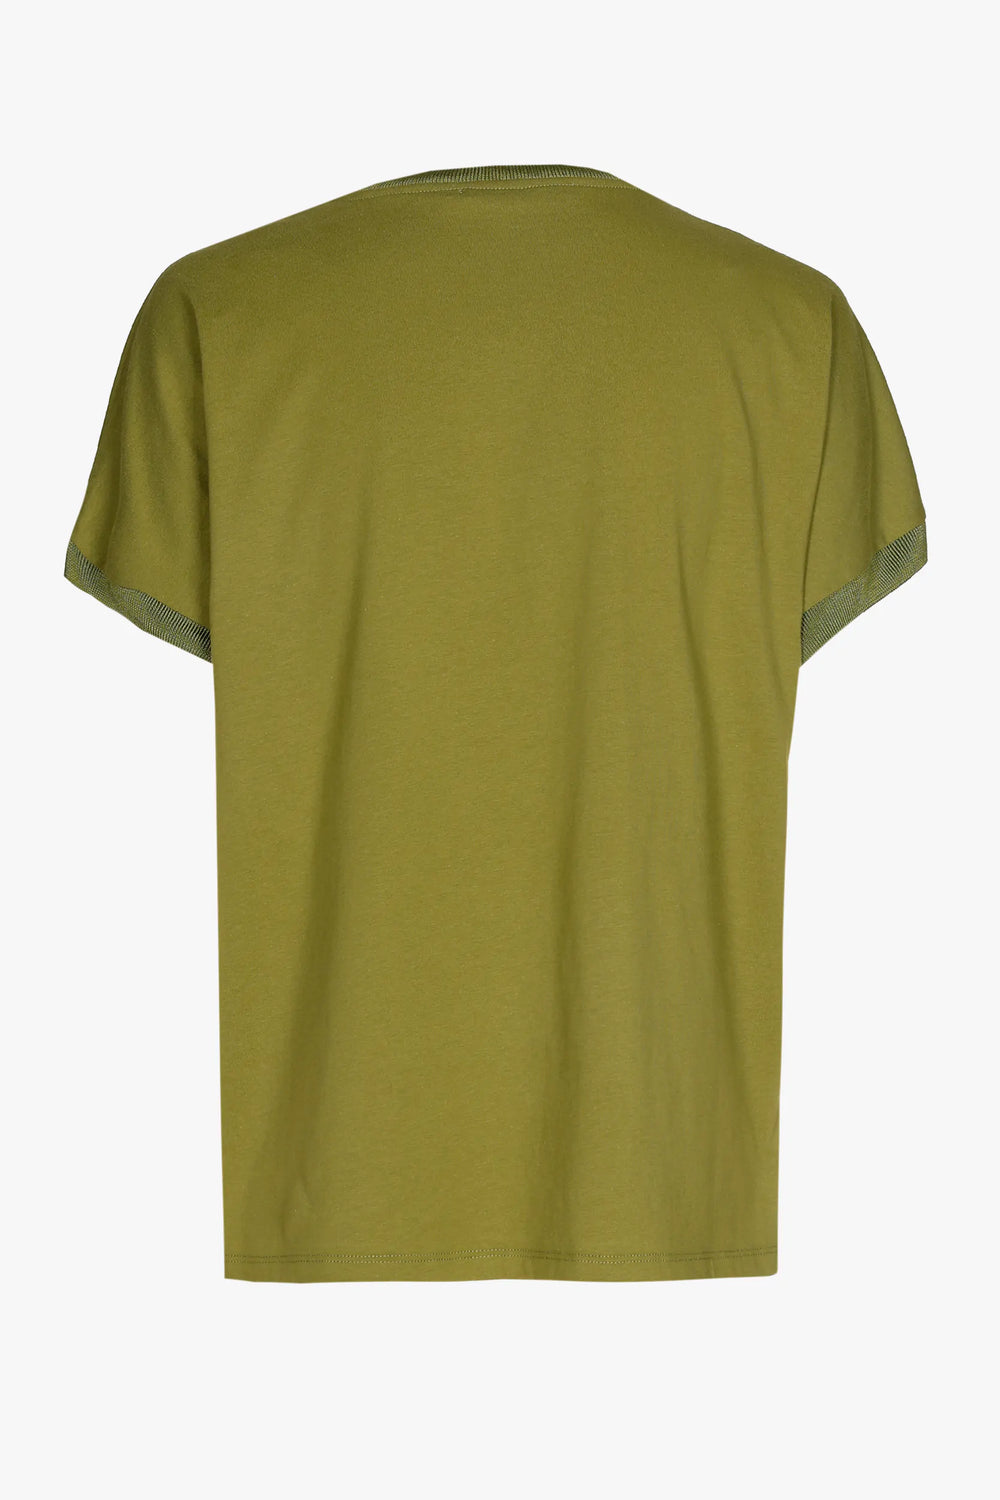 mosgroen t-shirt - xandres - - grote maten - dameskleding - kledingwinkel - herent - leuven